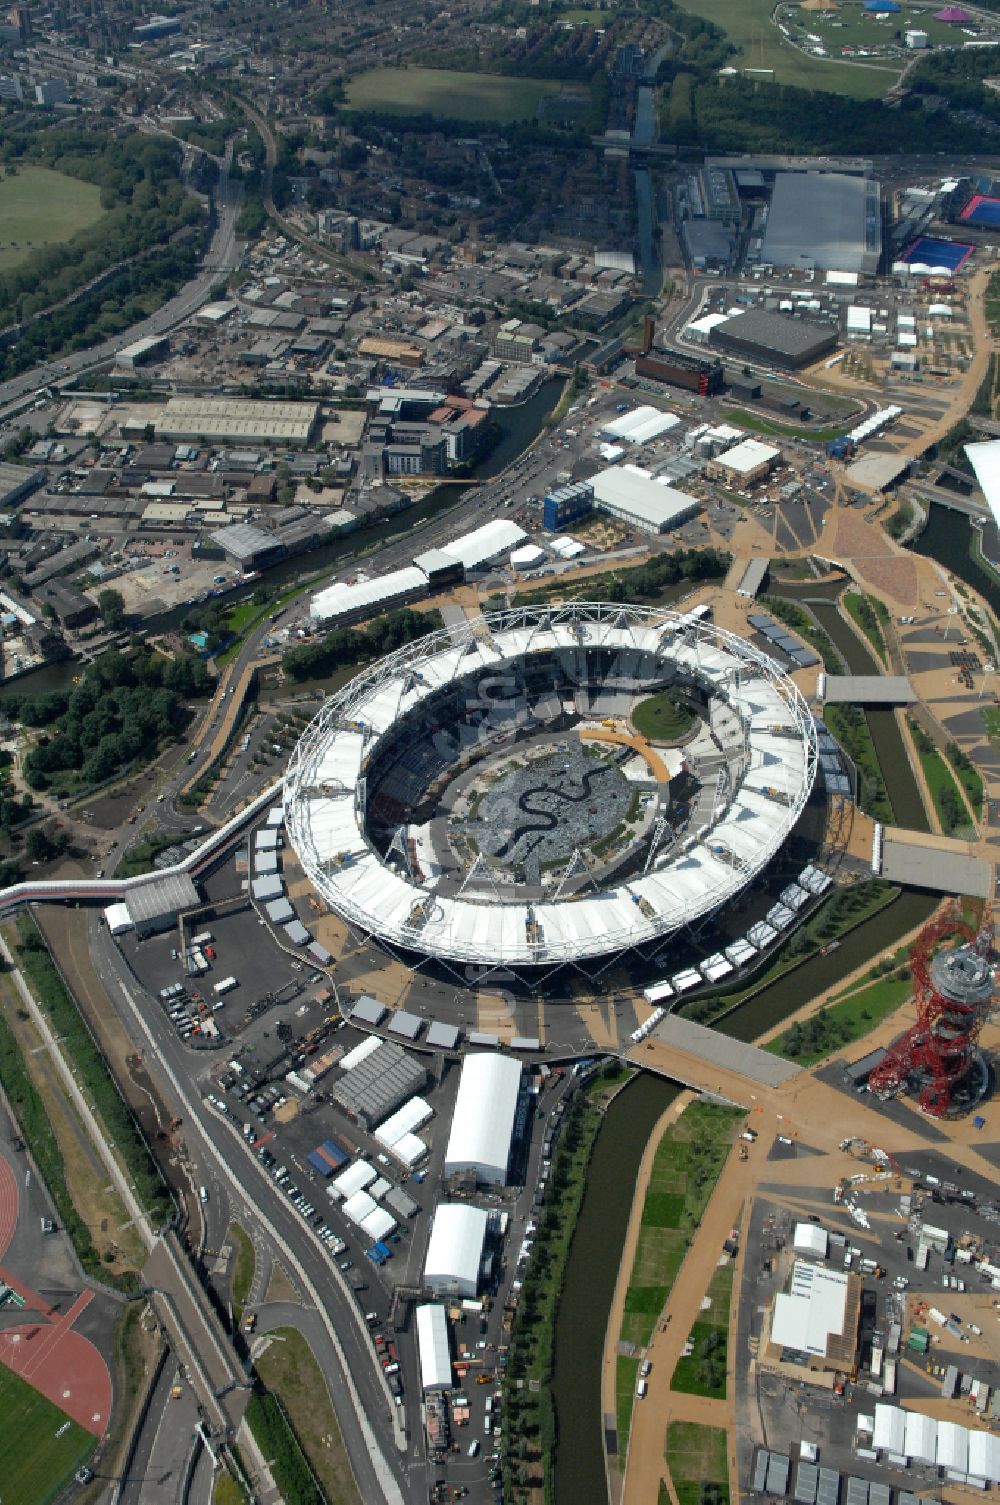 London von oben - Sportstätten-Gelände der Arena des Stadion Olympiastadion in London in England, Vereinigtes Königreich